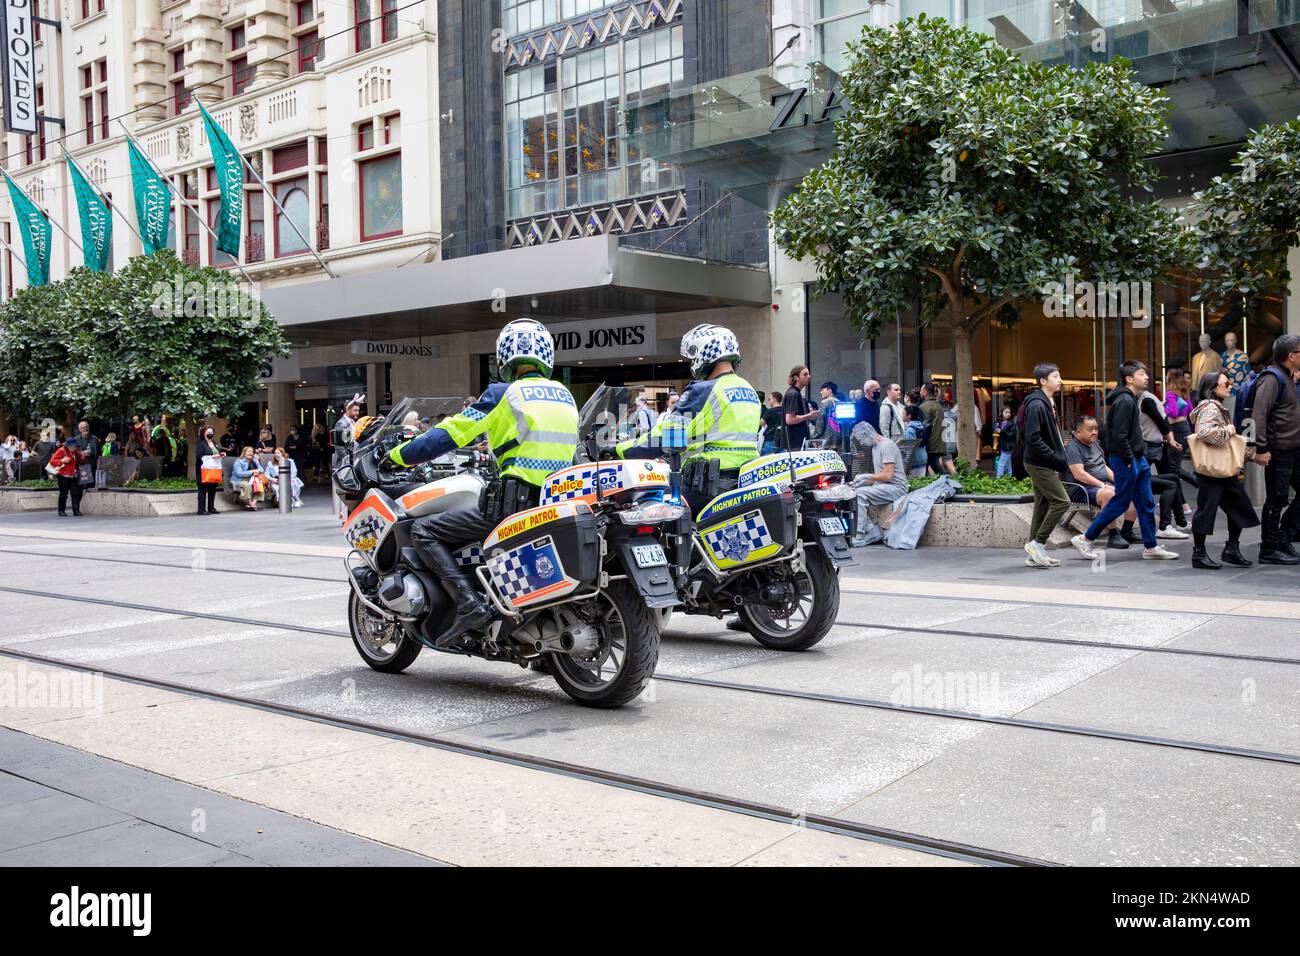 Zwei australische Polizeibeamte auf Polizeimotorrädern im zentralen Geschäftsviertel von Melbourne, beobachten einen protestmarsch in der Stadt, Victoria, Australien Stockfoto